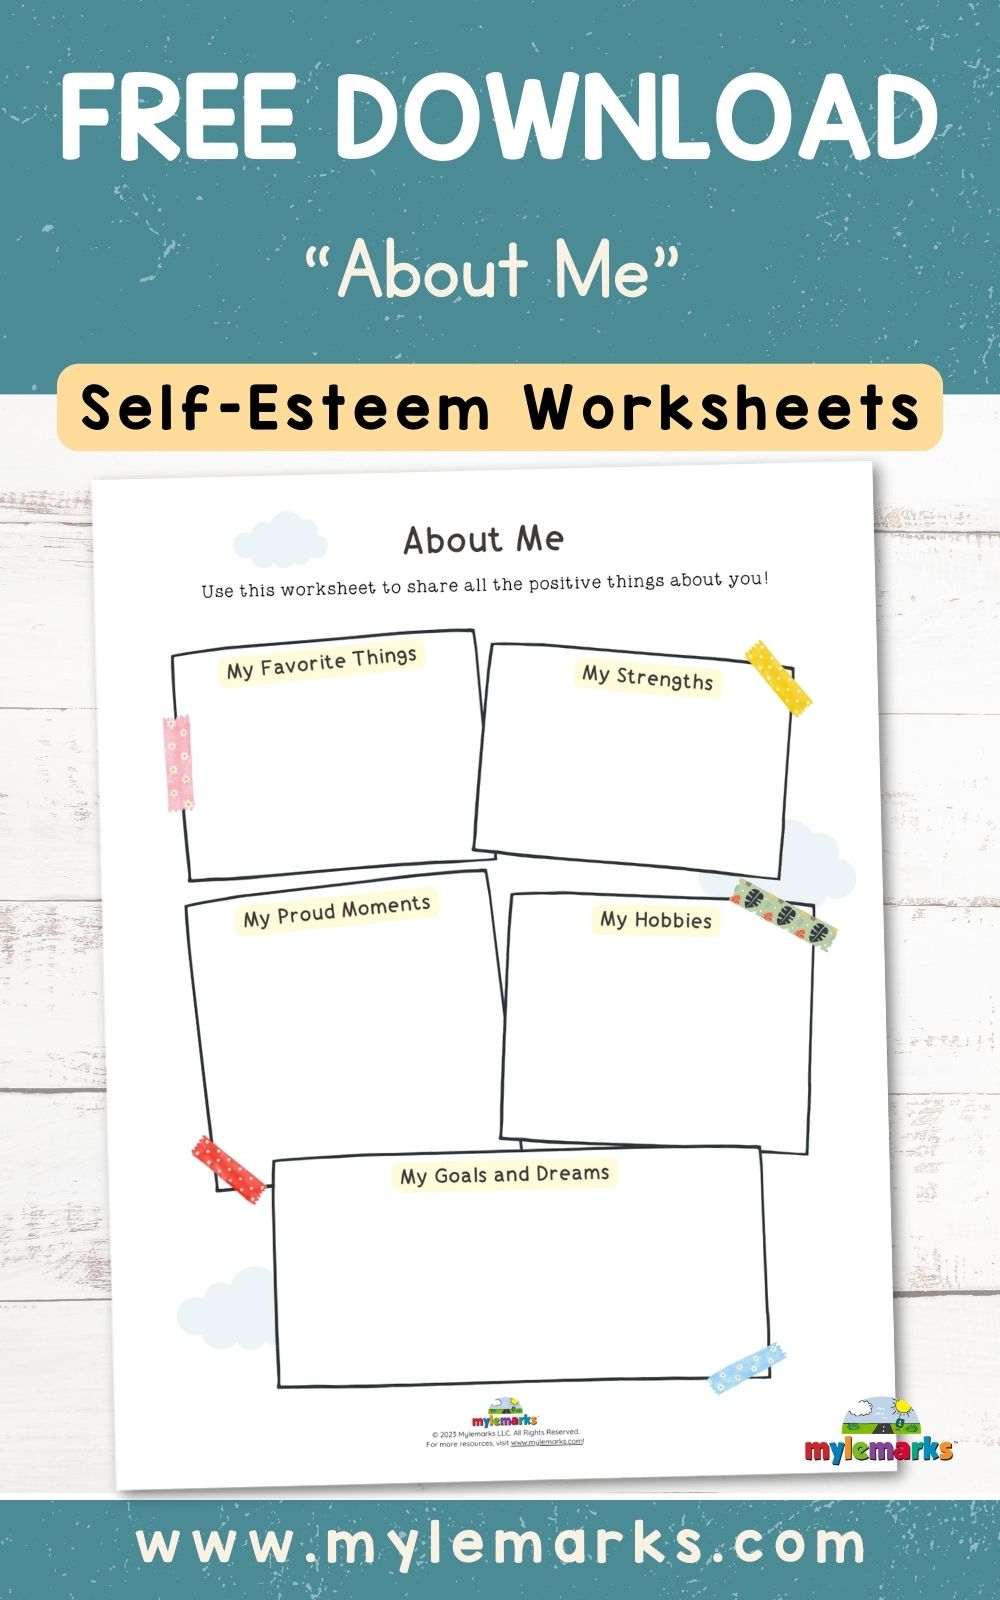 http://www.mylemarks.com/uploads/4/7/0/1/47012219/about-me-self-esteem-free-worksheets-for-kids_orig.jpg